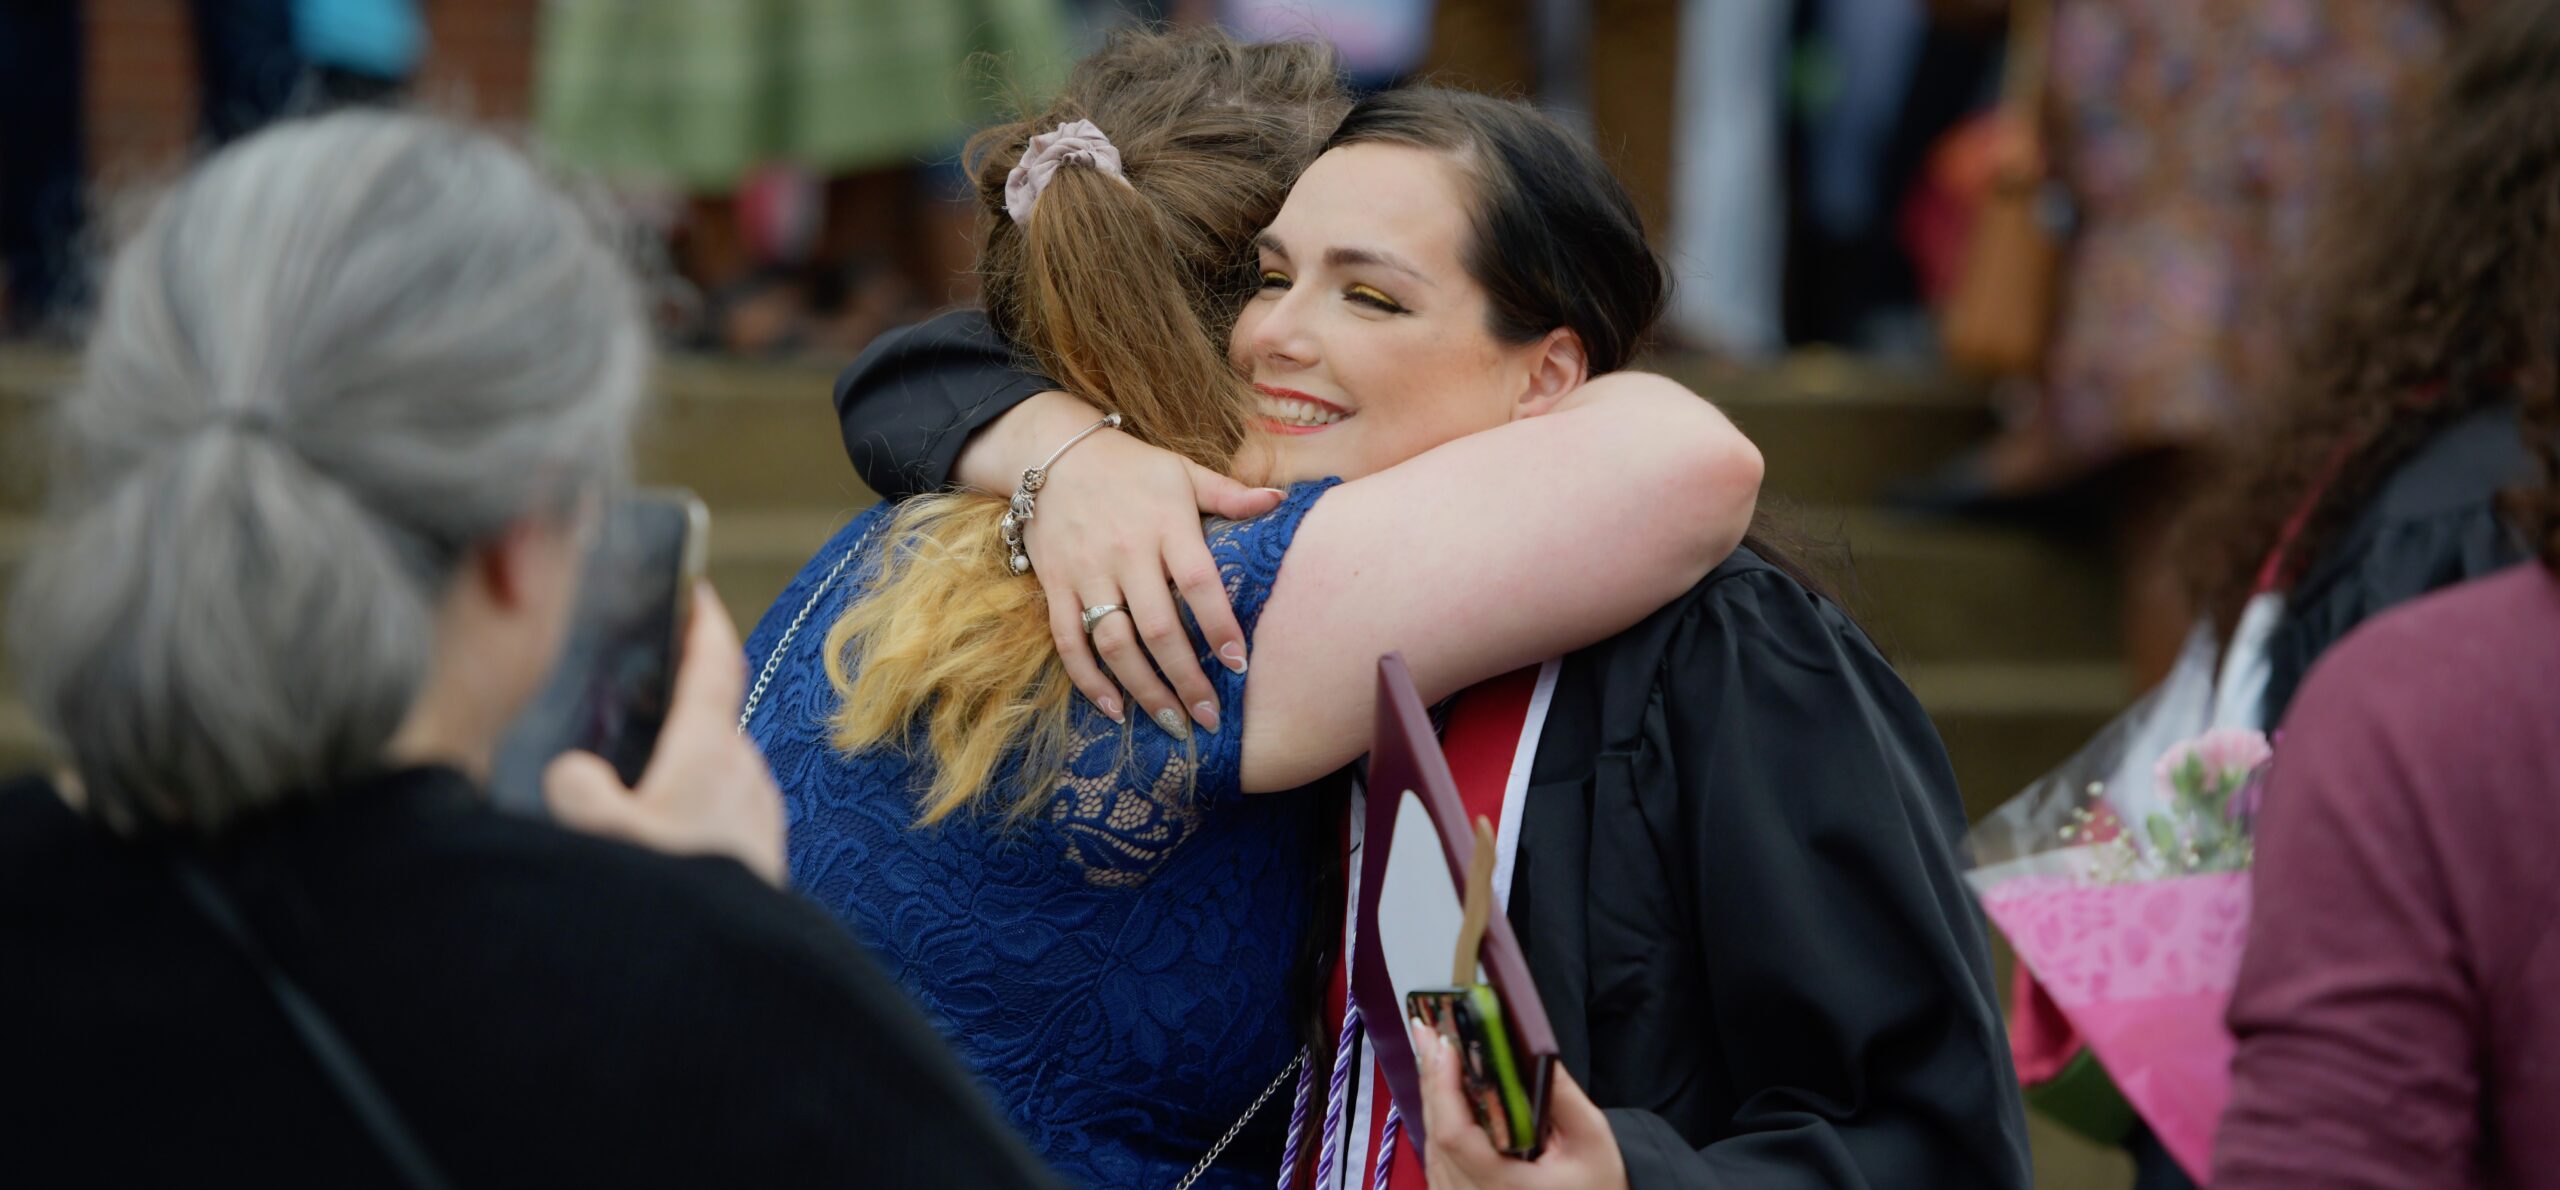 An image of an Eastern Kentucky University gradate hugging a guest.